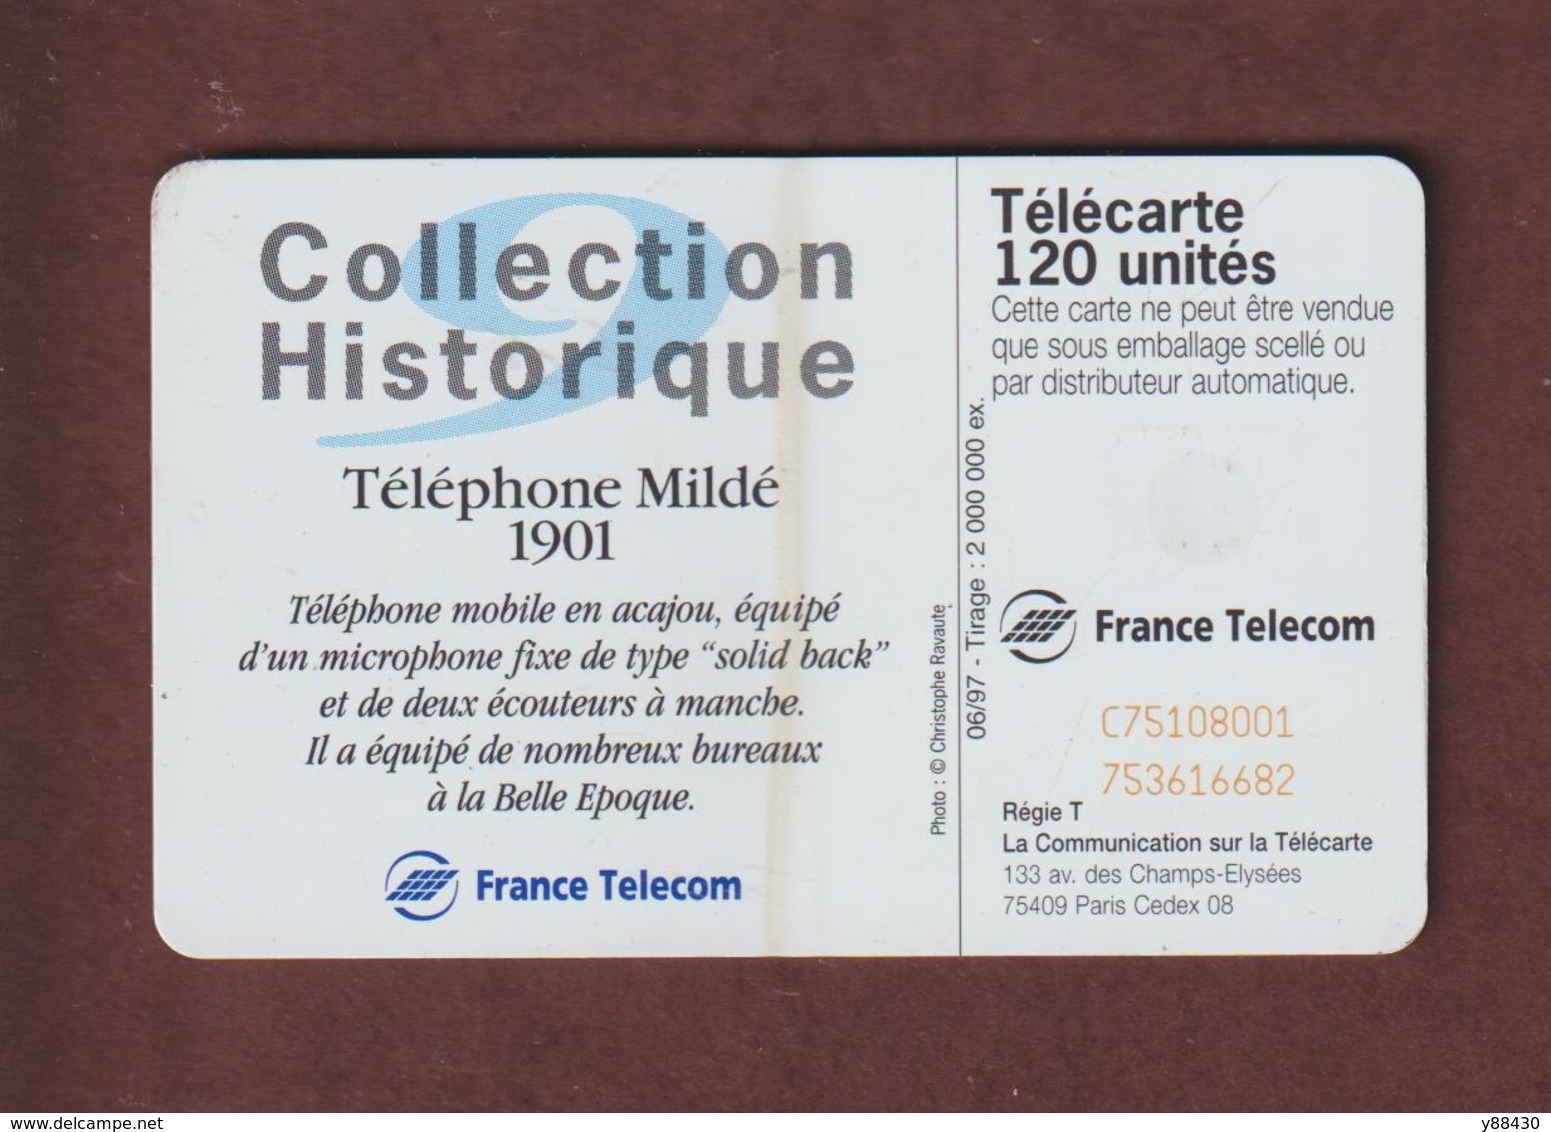 TELECARTE - Carte Téléphonique De 120 Unités - Téléphone Mildé 1901  - 2 Scannes. - 120 Units